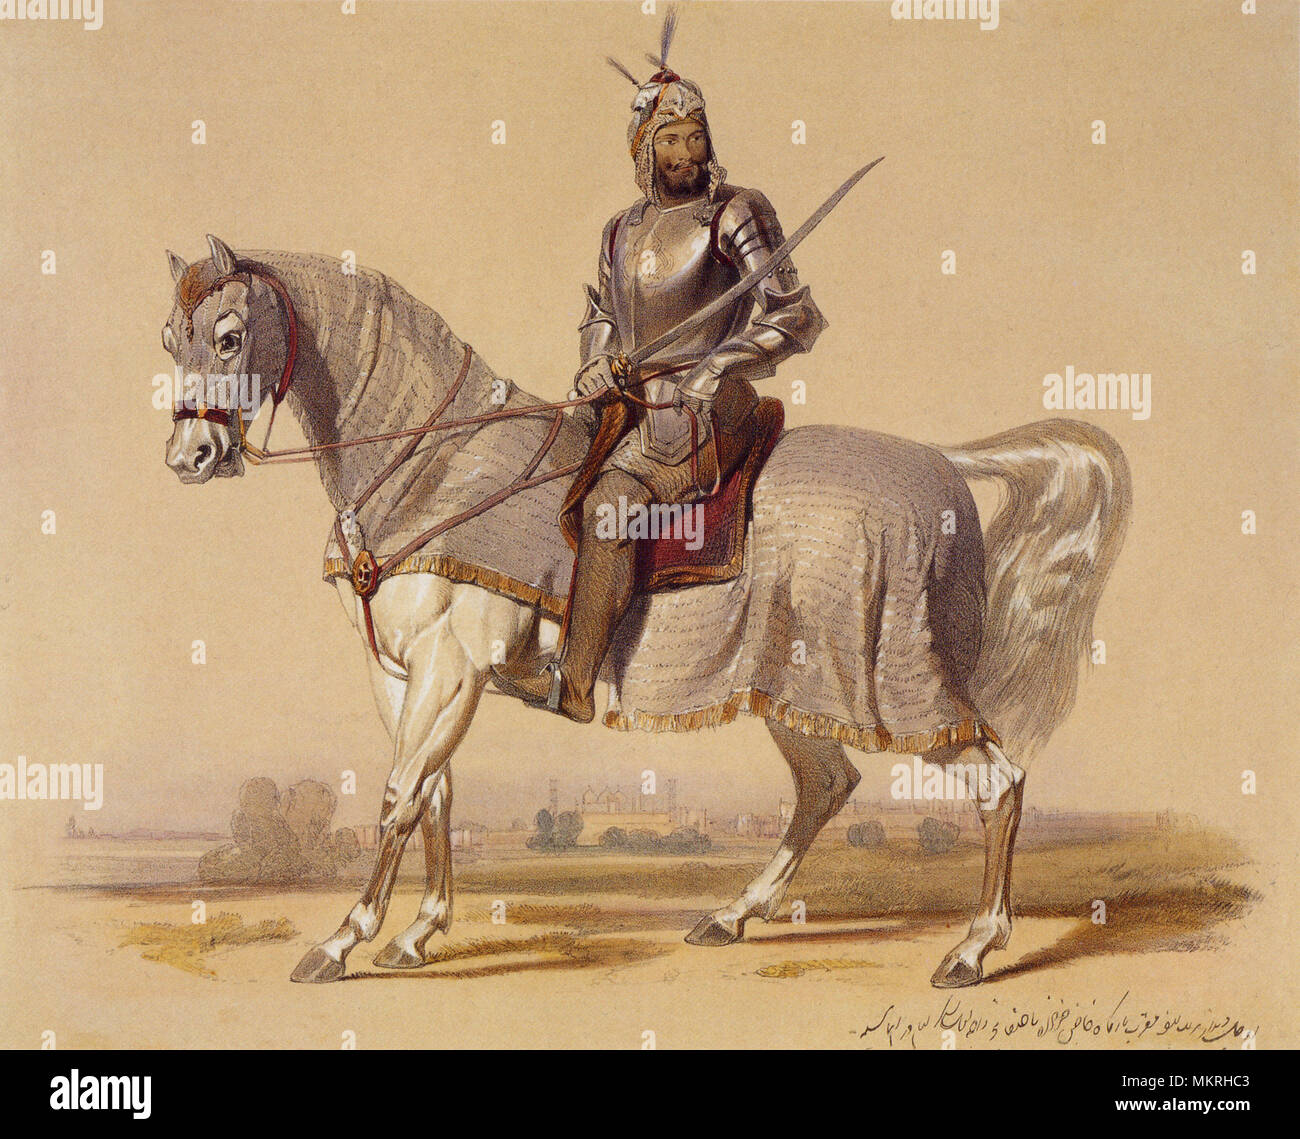 Sikh Warrior on Horse, India 1847 Stock Photo